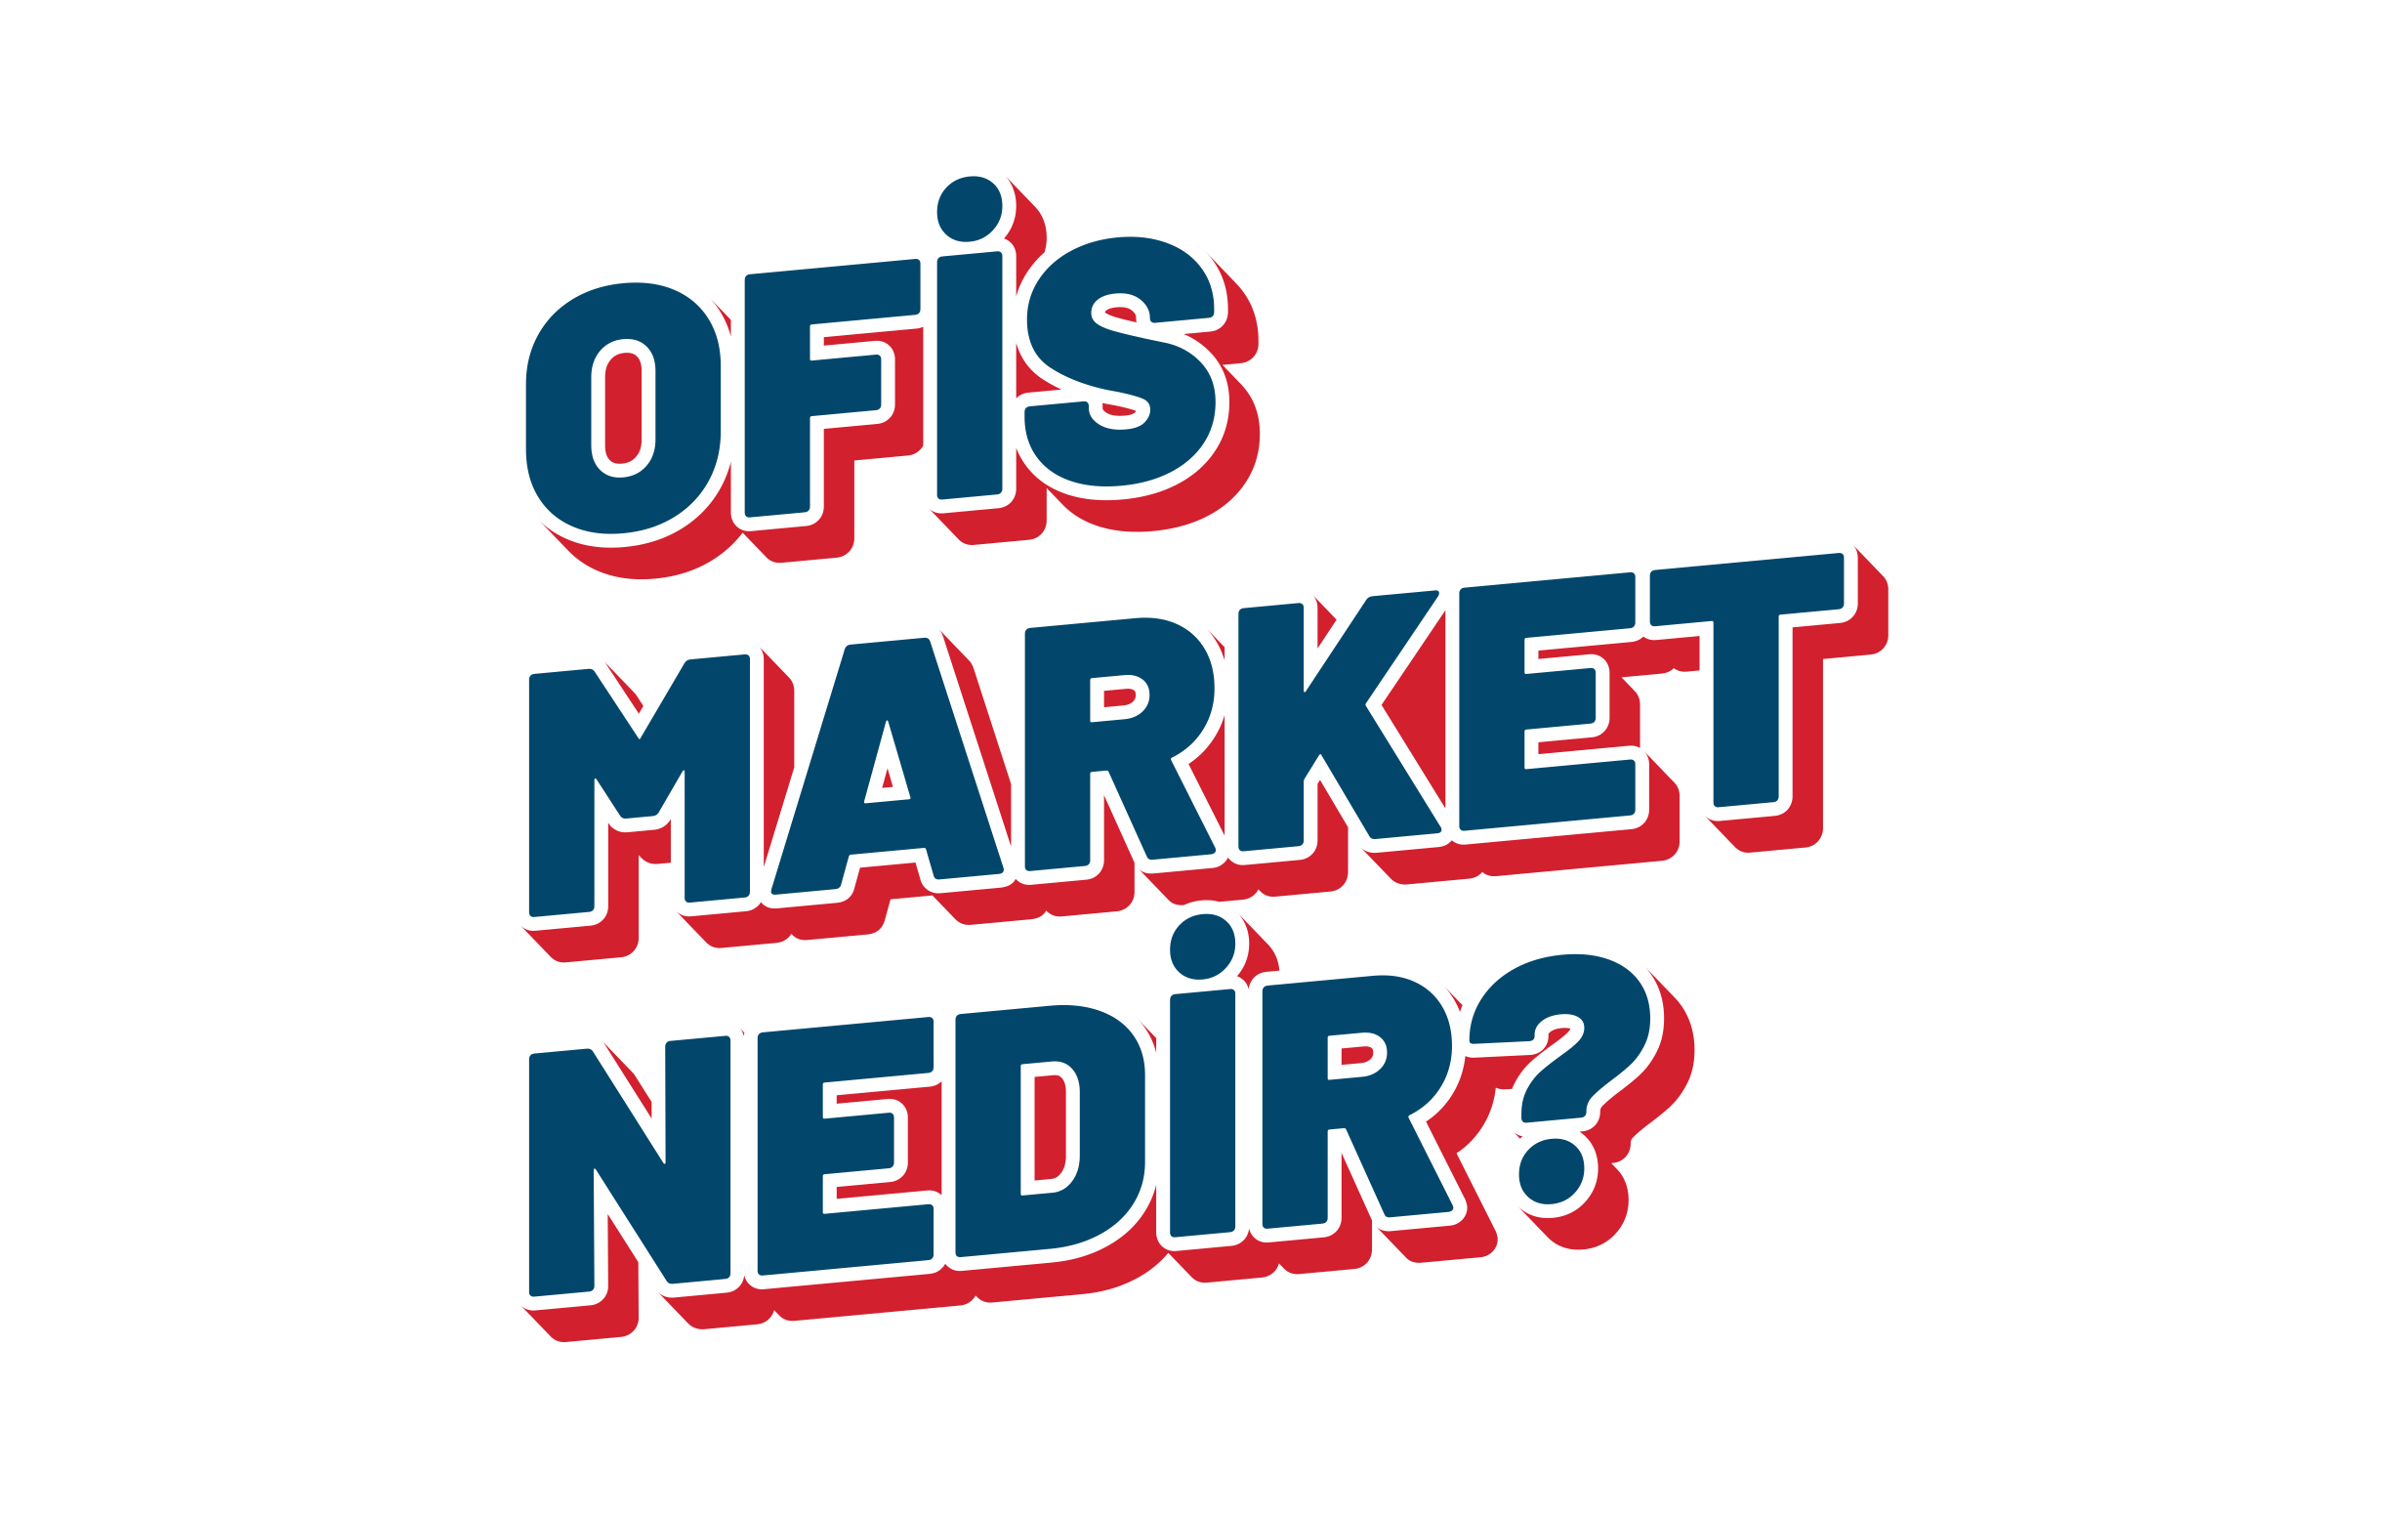 Ofis Market nedir?